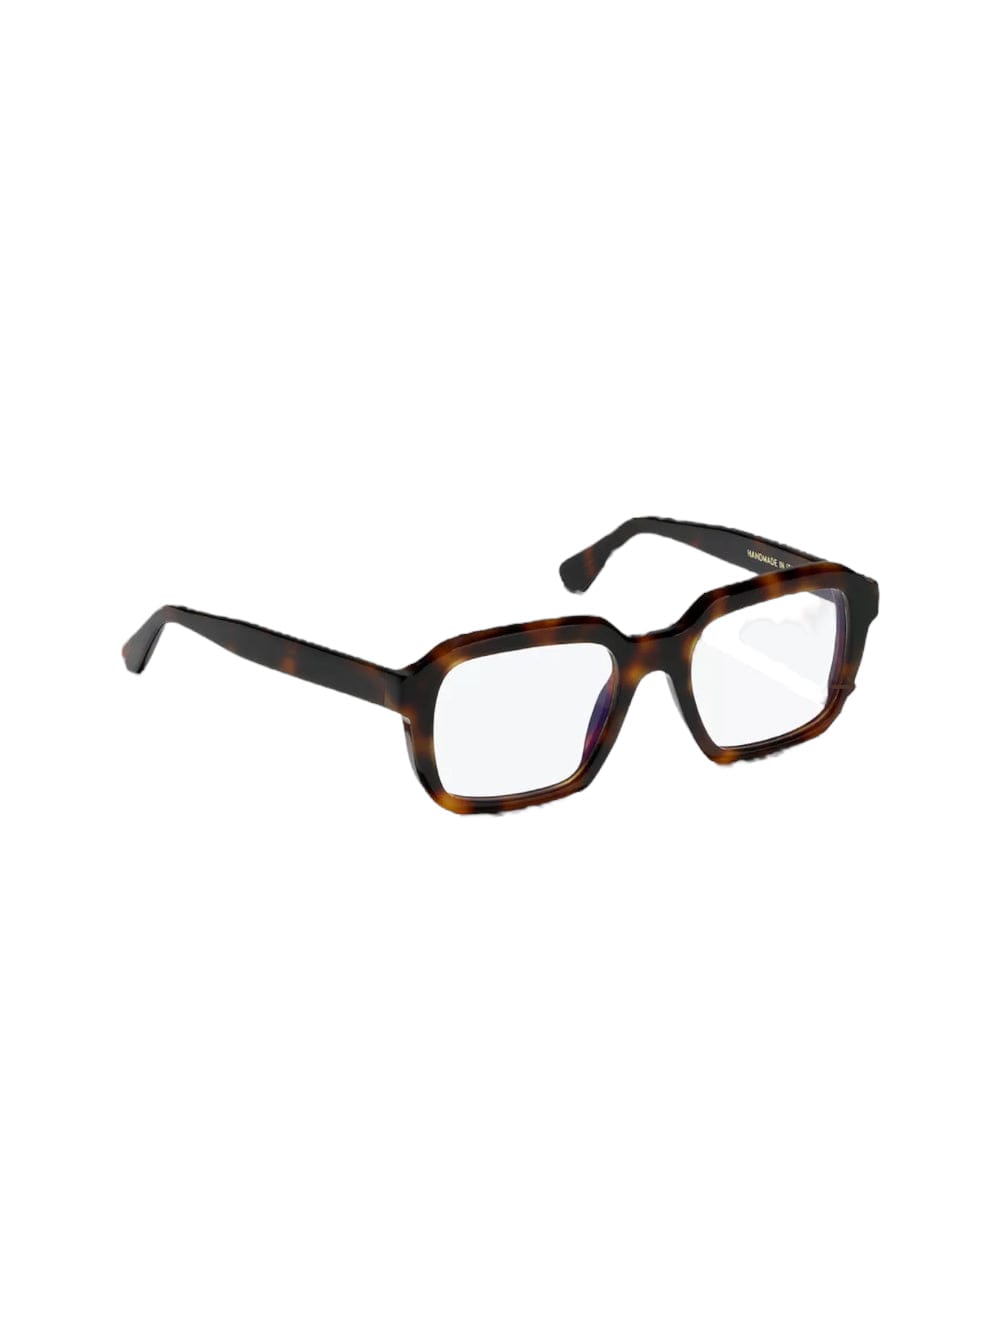 Lgr Raffaello - Black Glasses